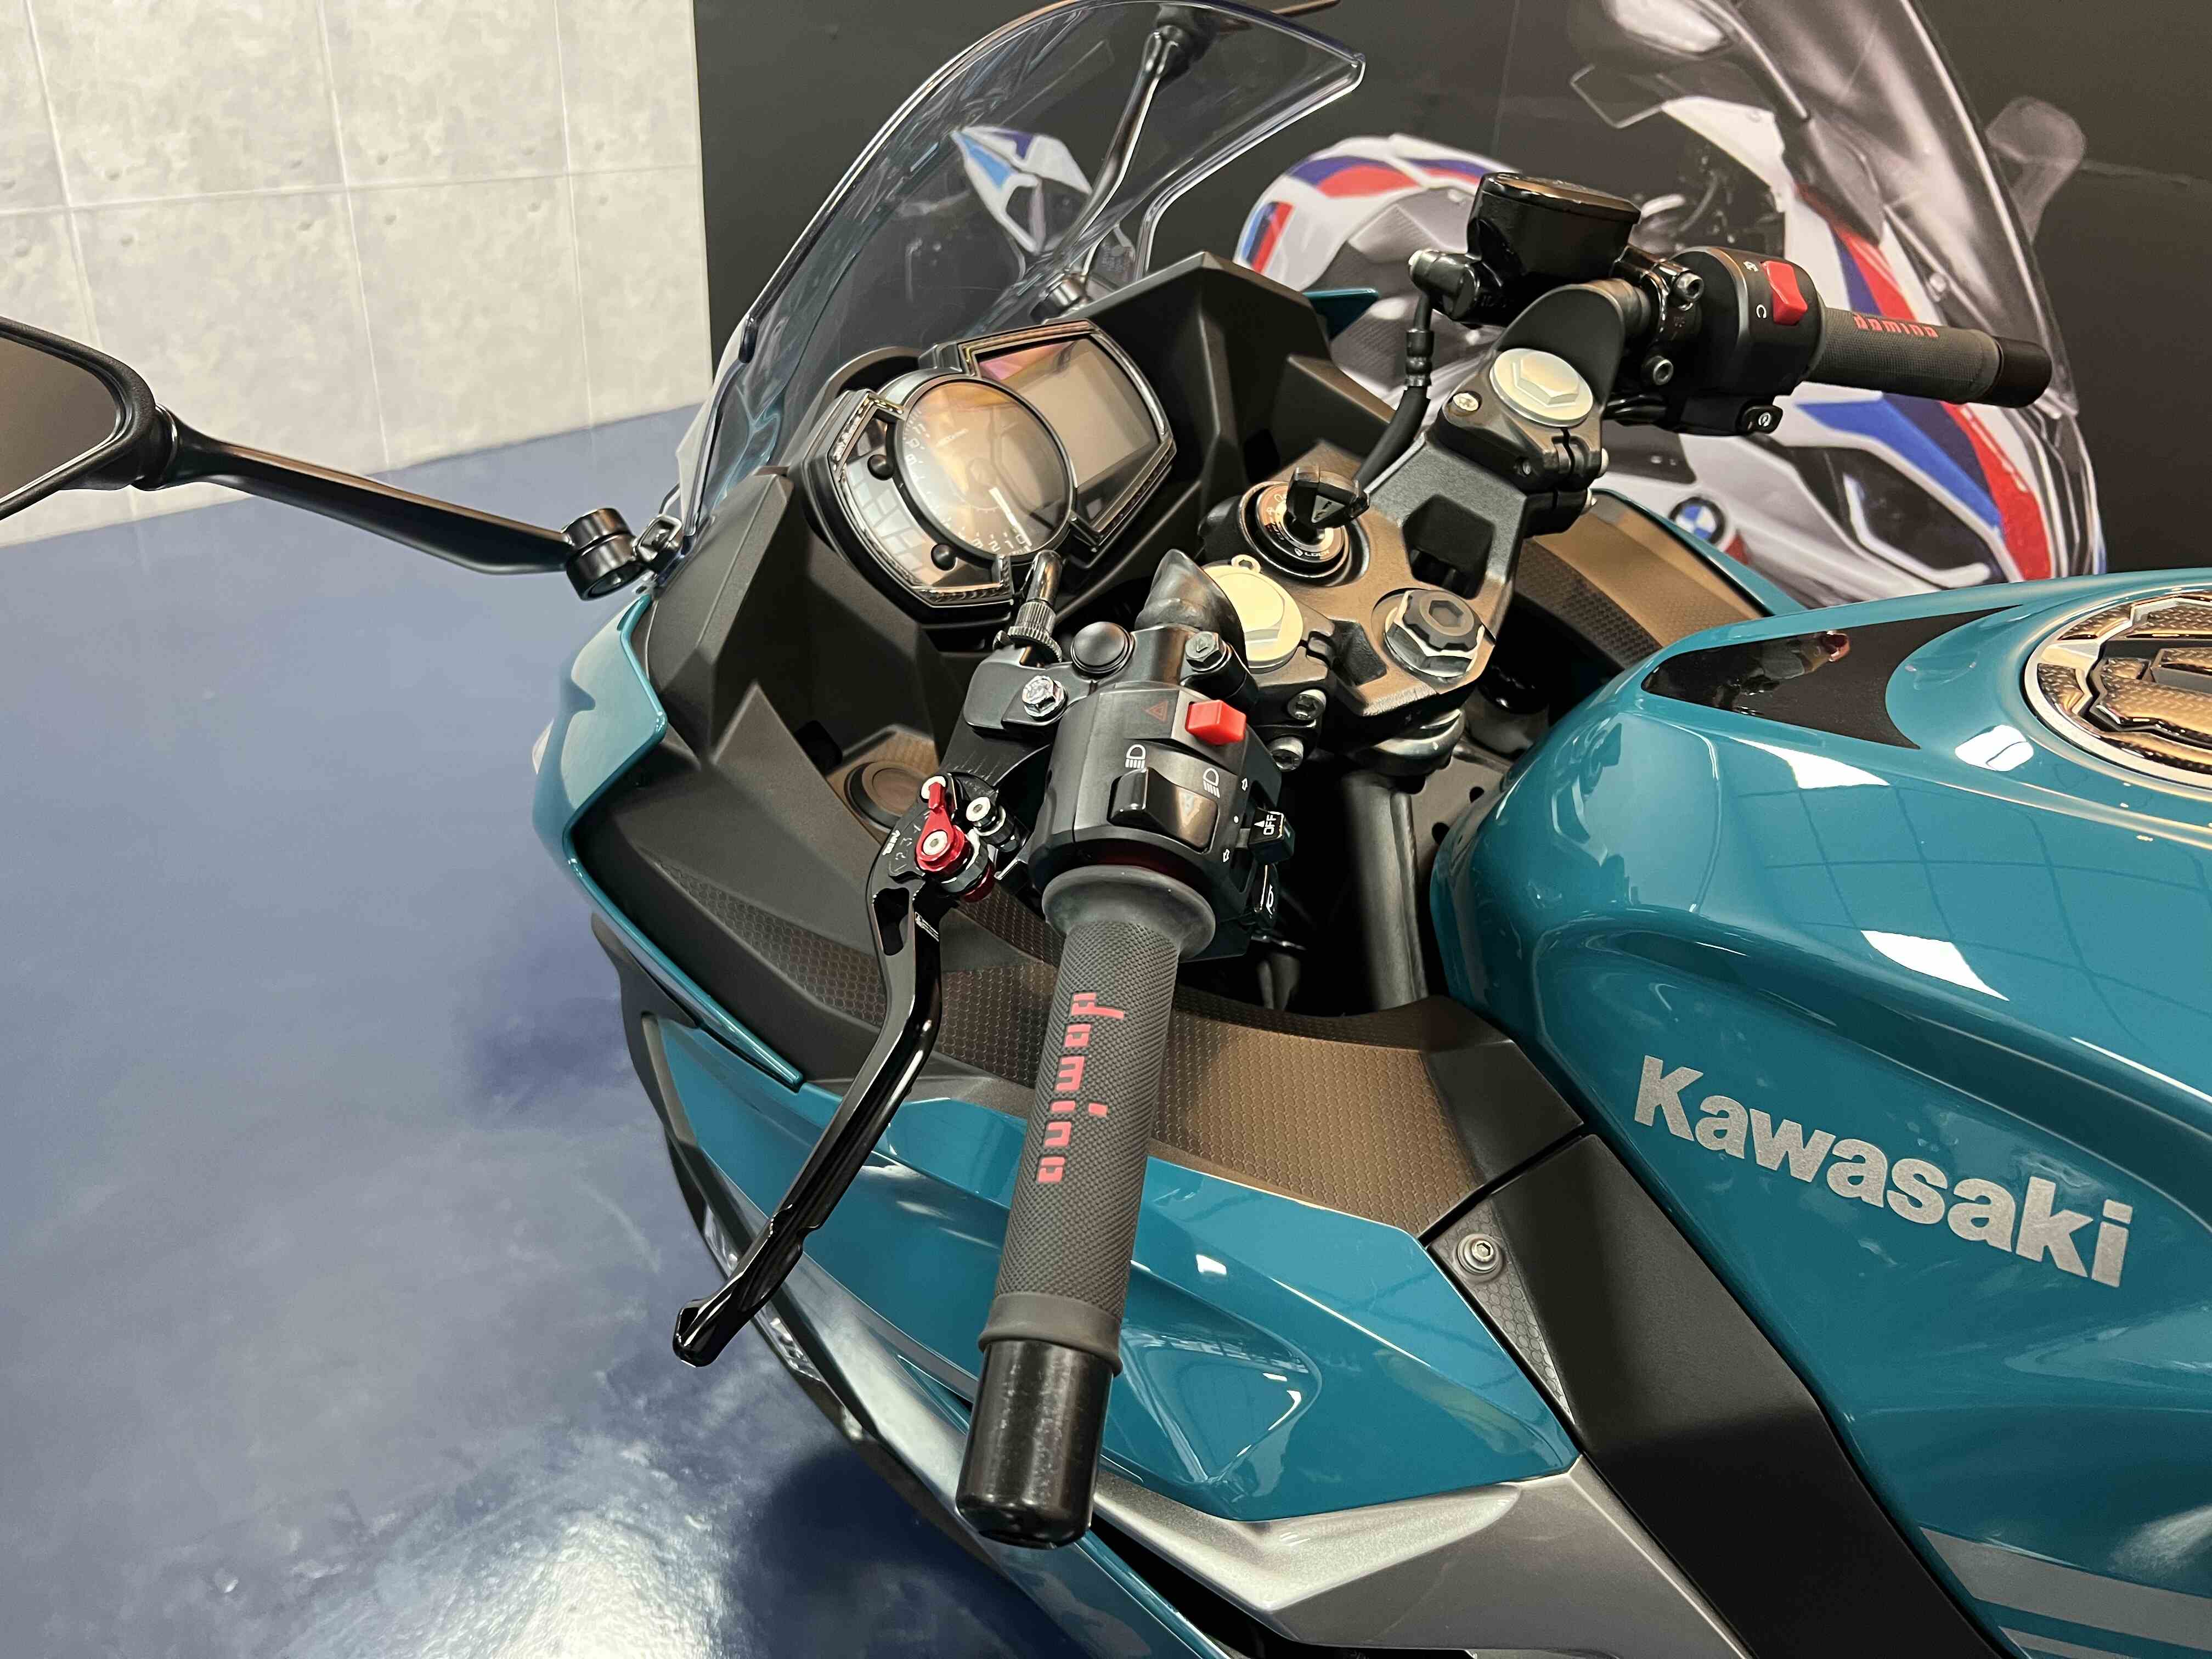 KAWASAKI NINJA400 - 中古/二手車出售中 2021 Kawasaki Ninja400 湖水藍 | 哈斯重機